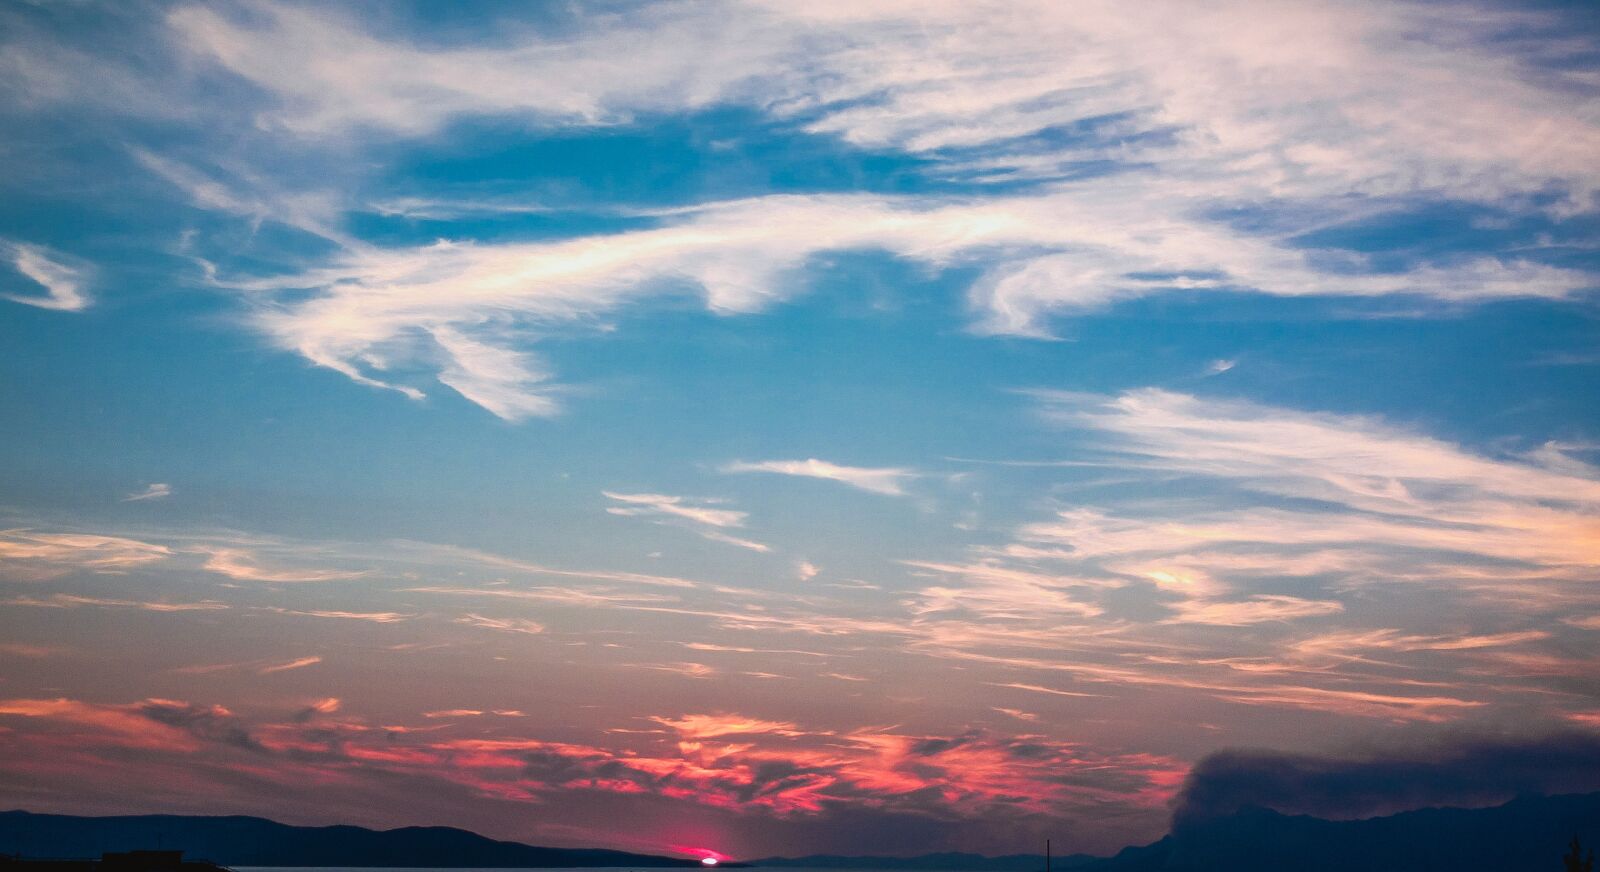 Nokia 808 PureView sample photo. Sky, sunset, nature photography